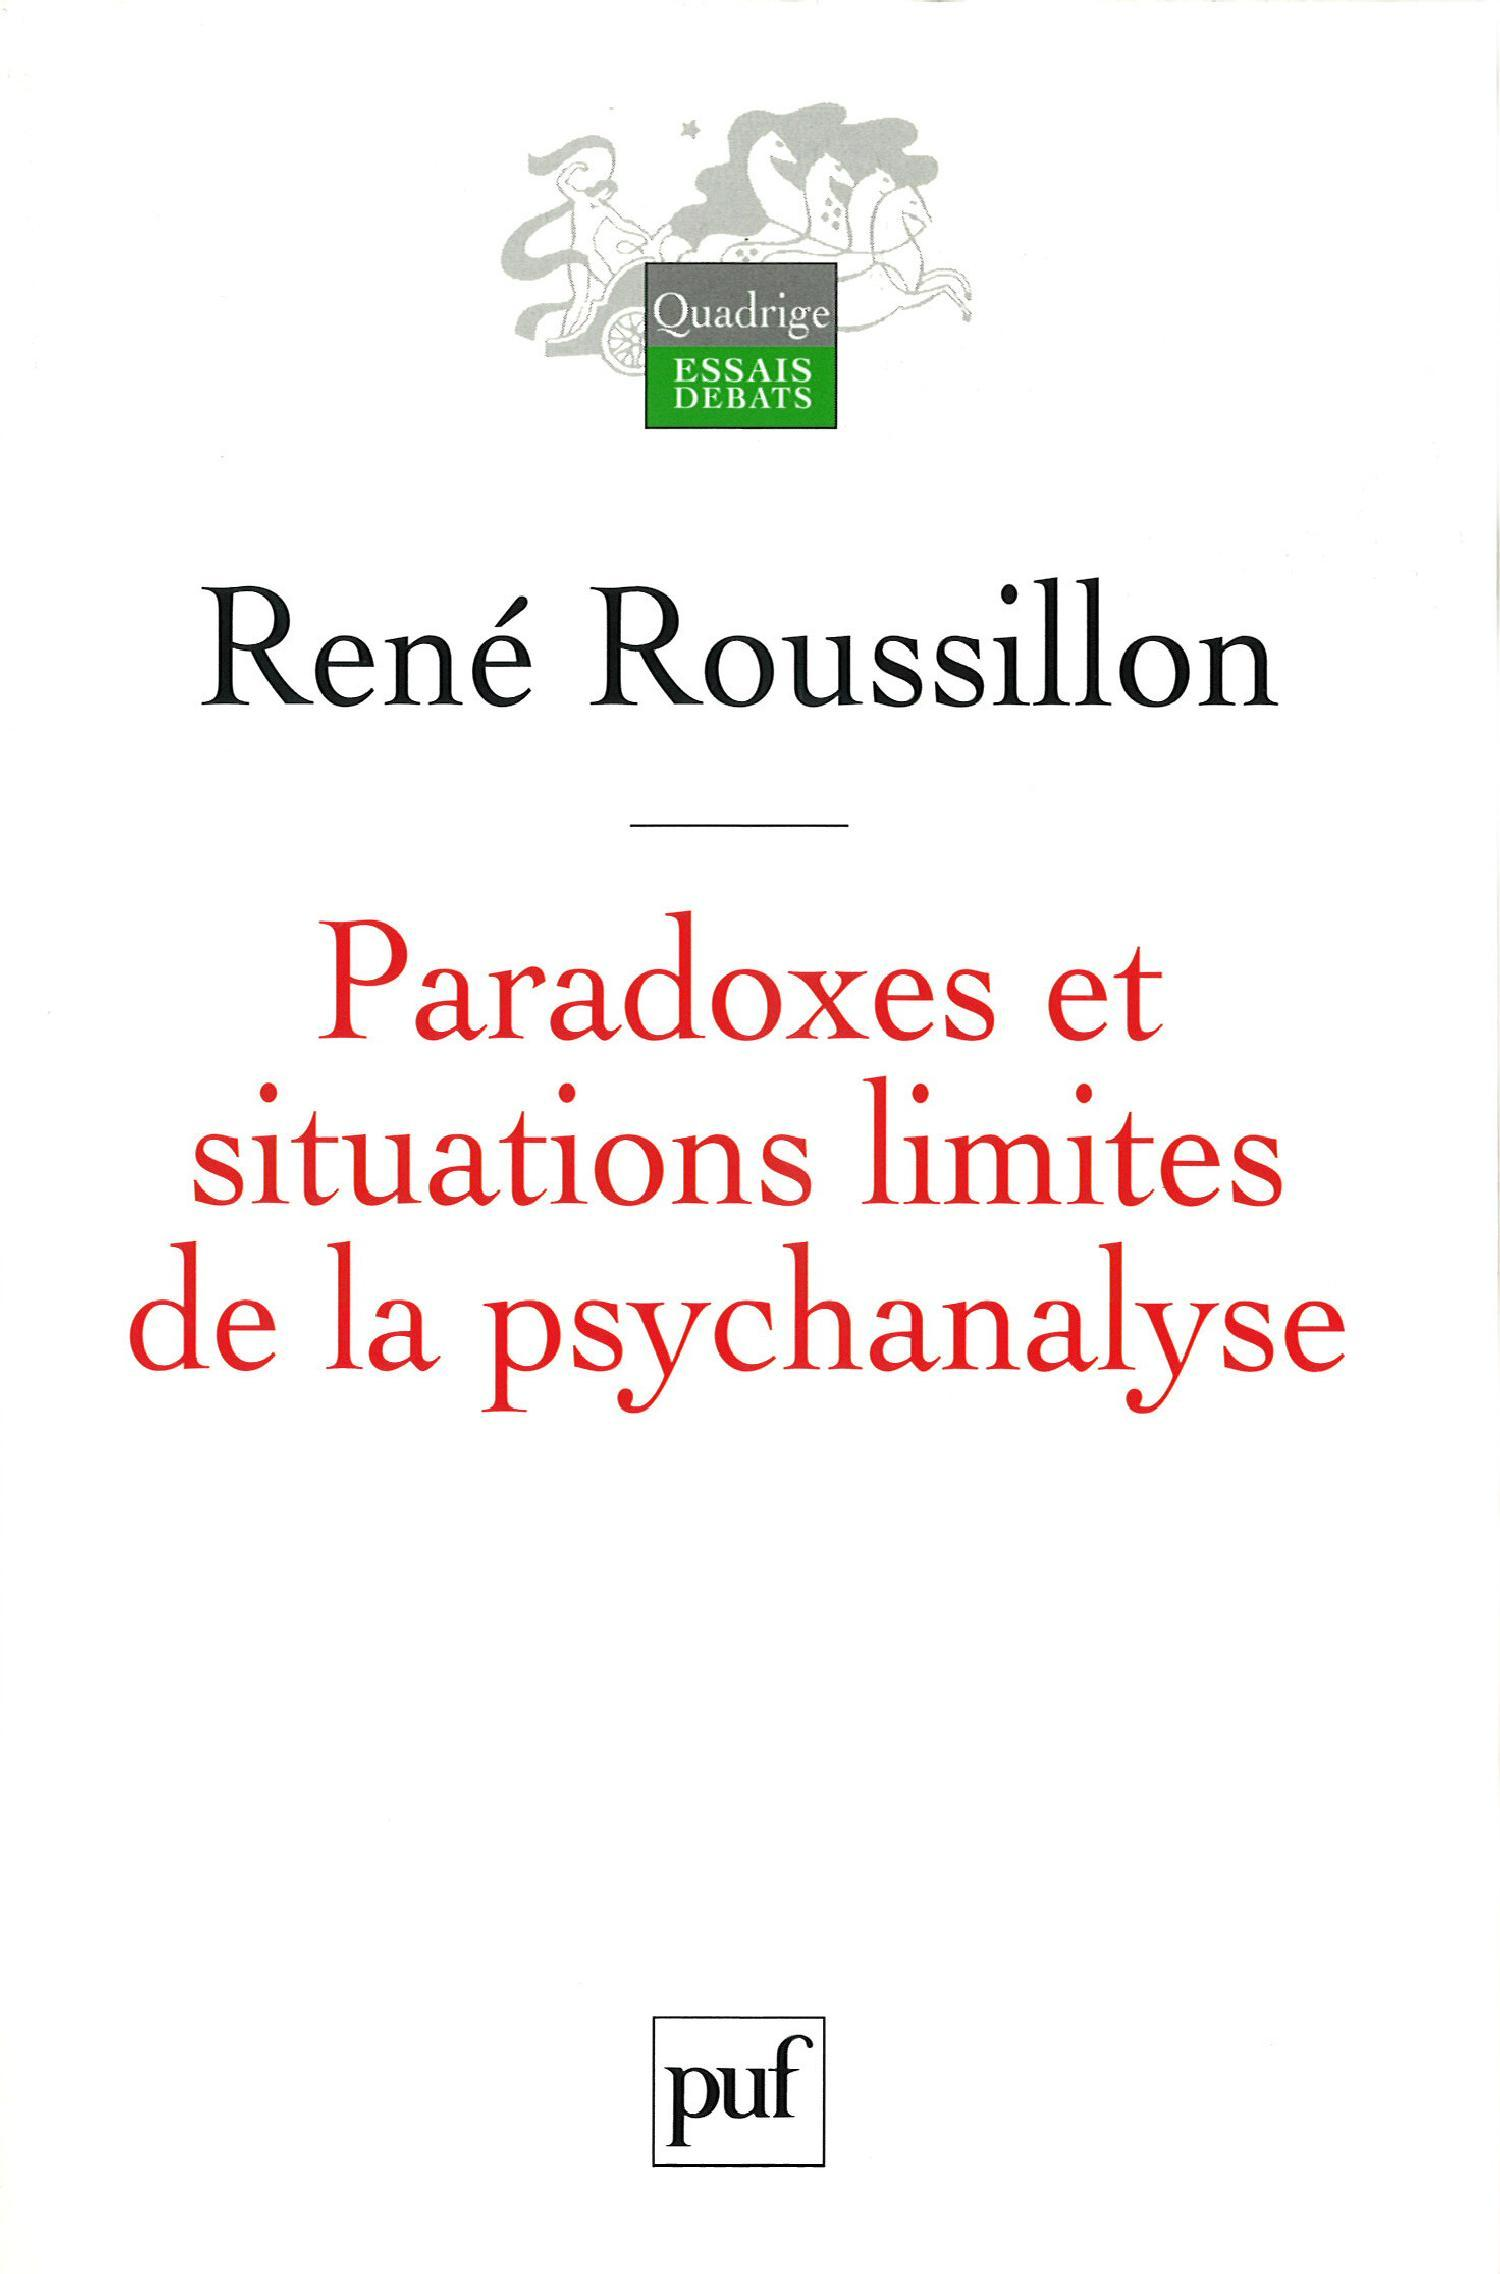 Paradoxes et situations limites de la psychanalyse De René Roussillon - Presses Universitaires de France